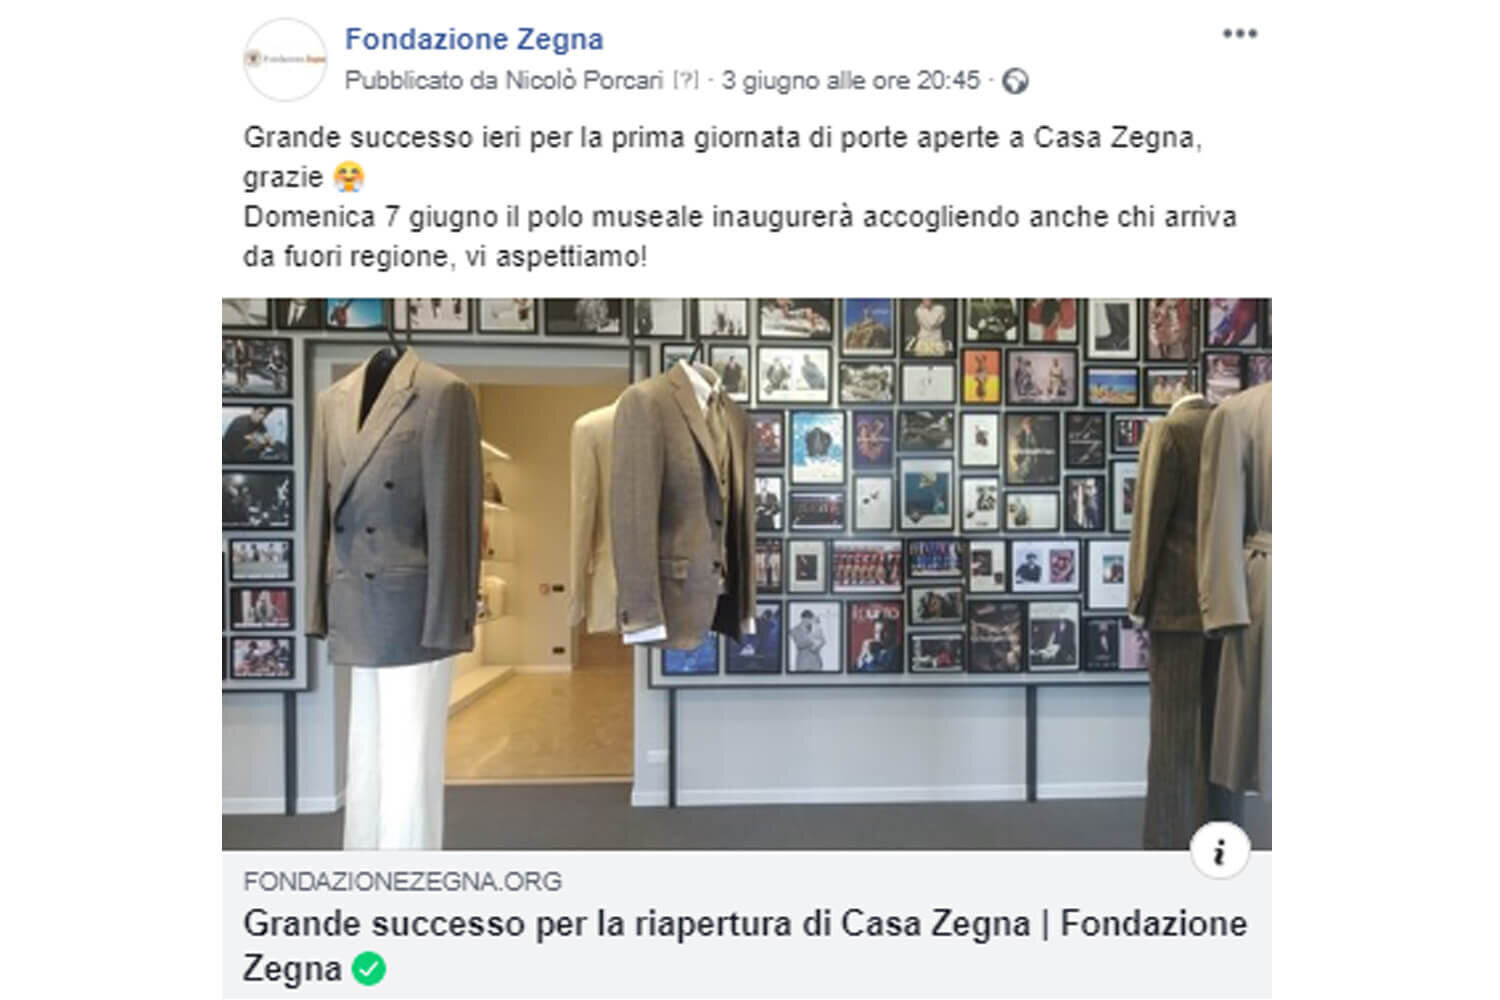 Fondazione_Zegna_FB_post.jpg